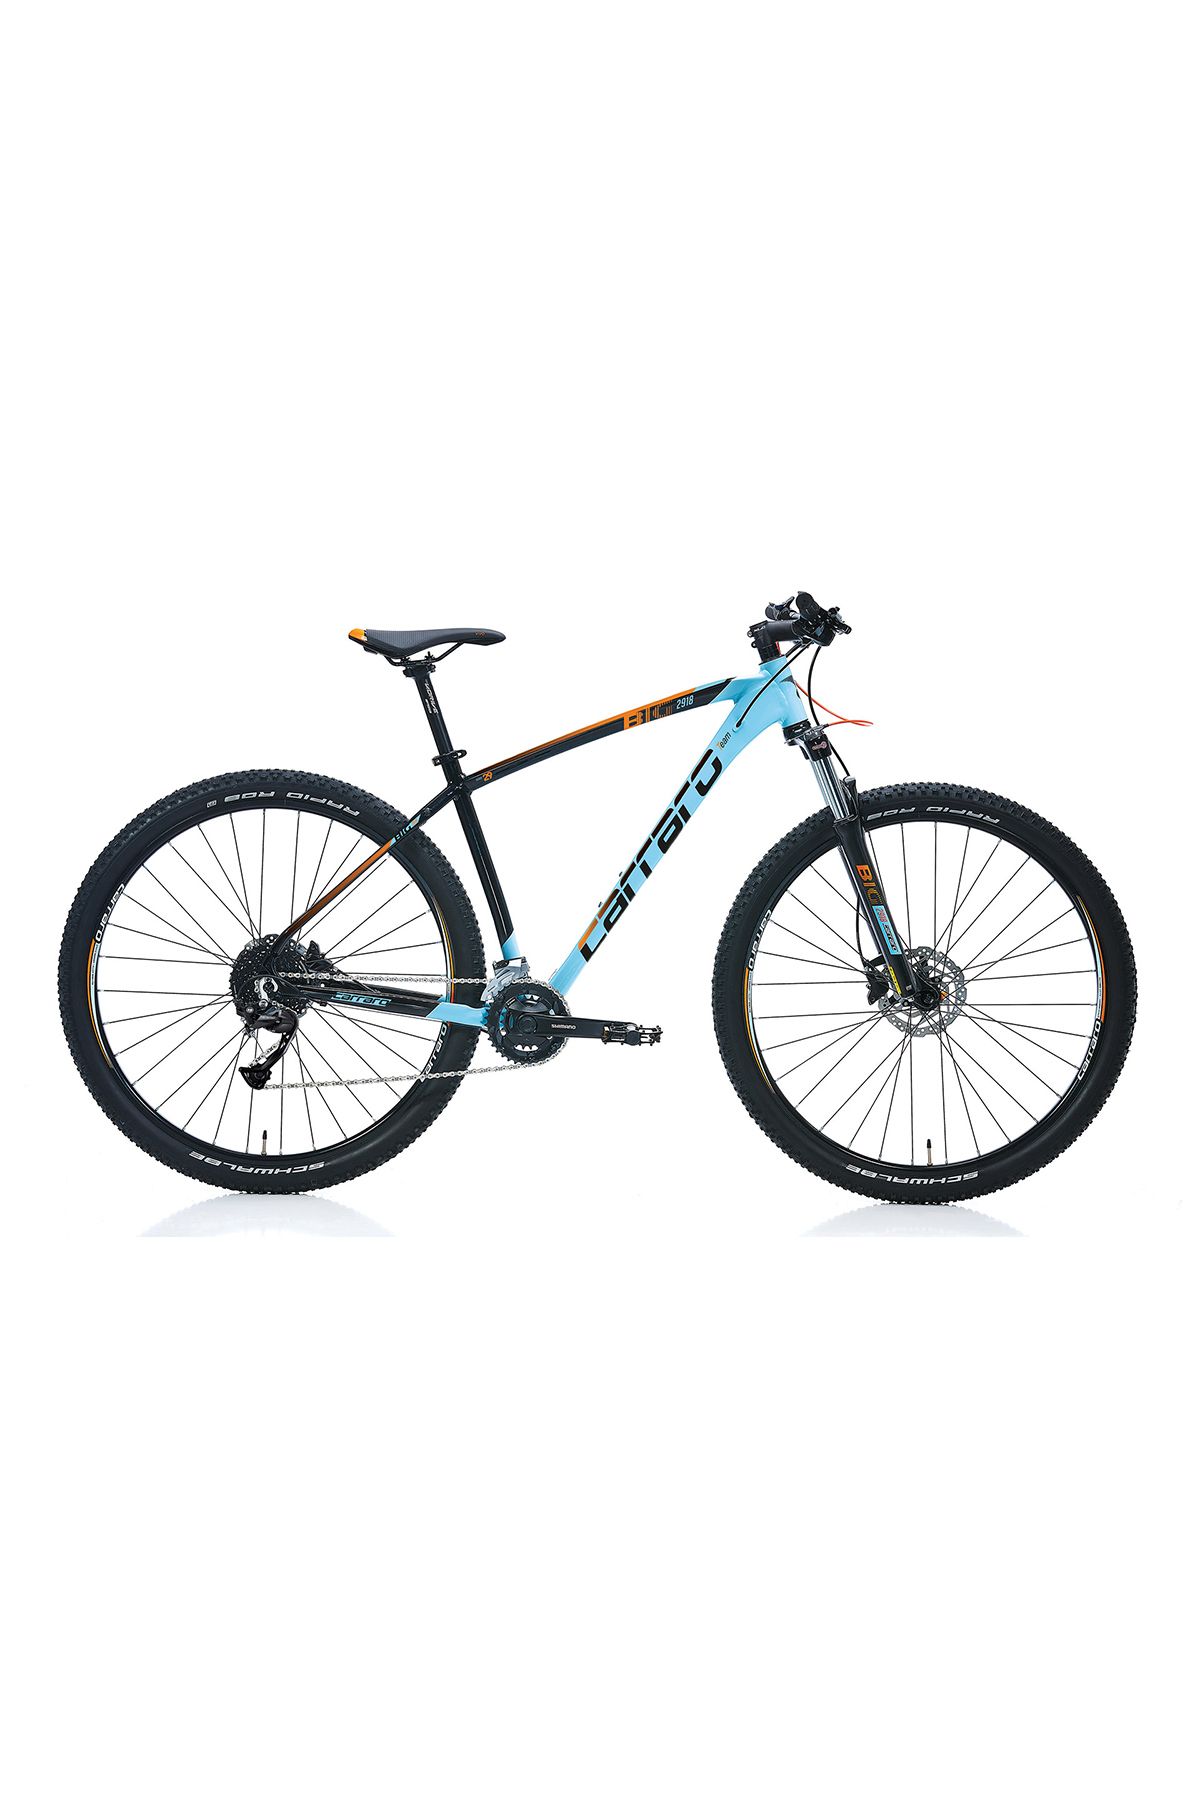 Carraro Big 2918 29 jant Dağ Bisikleti 44 Kadro Açık Mavi Siyah Turuncu